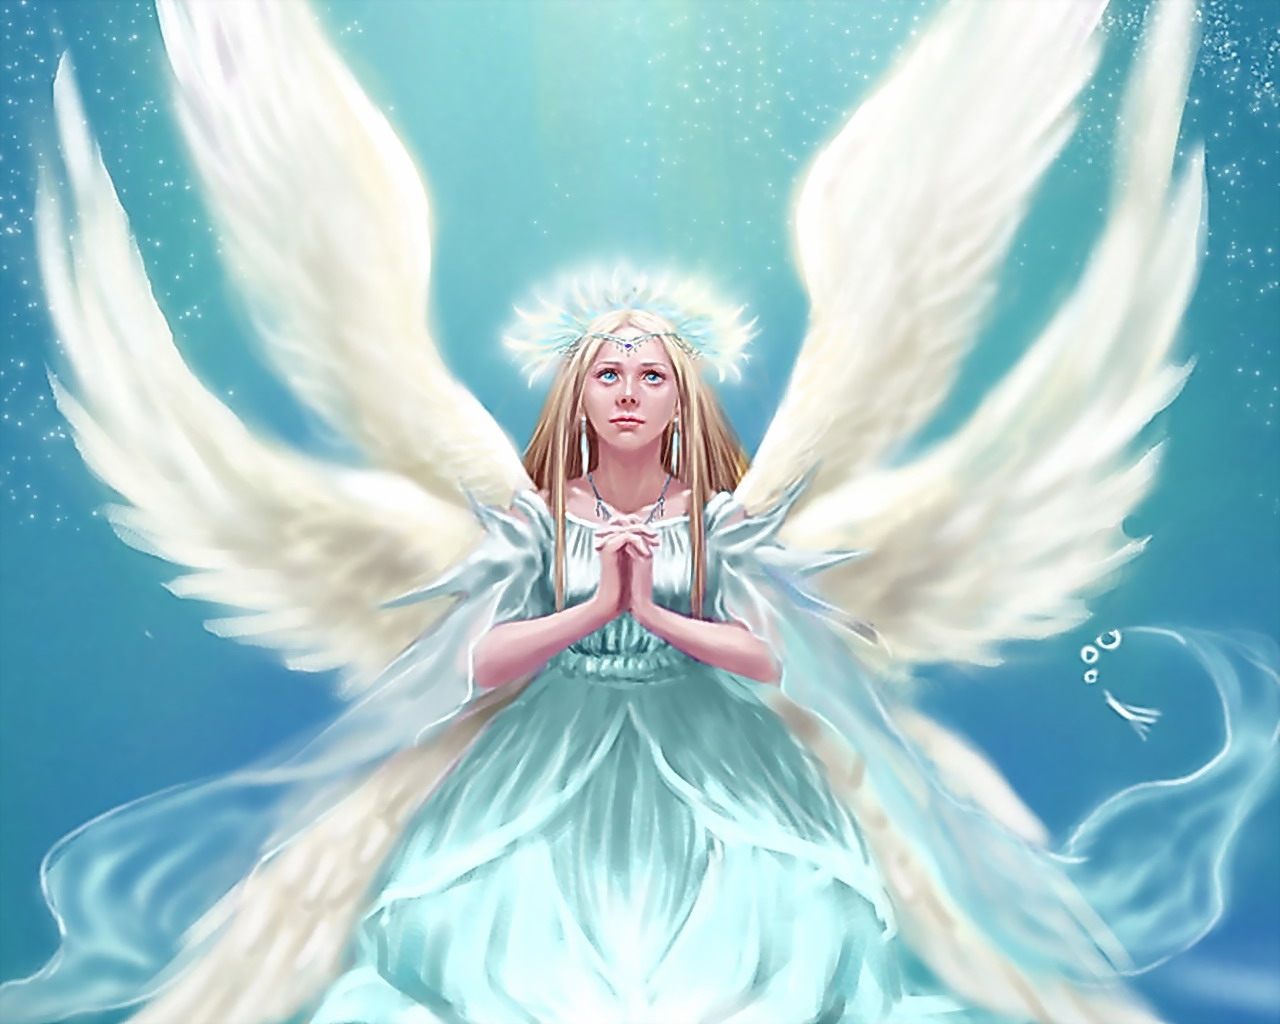 기도하는 소녀 벽지,천사,cg 삽화,소설 속의 인물,초자연적 생물,하늘